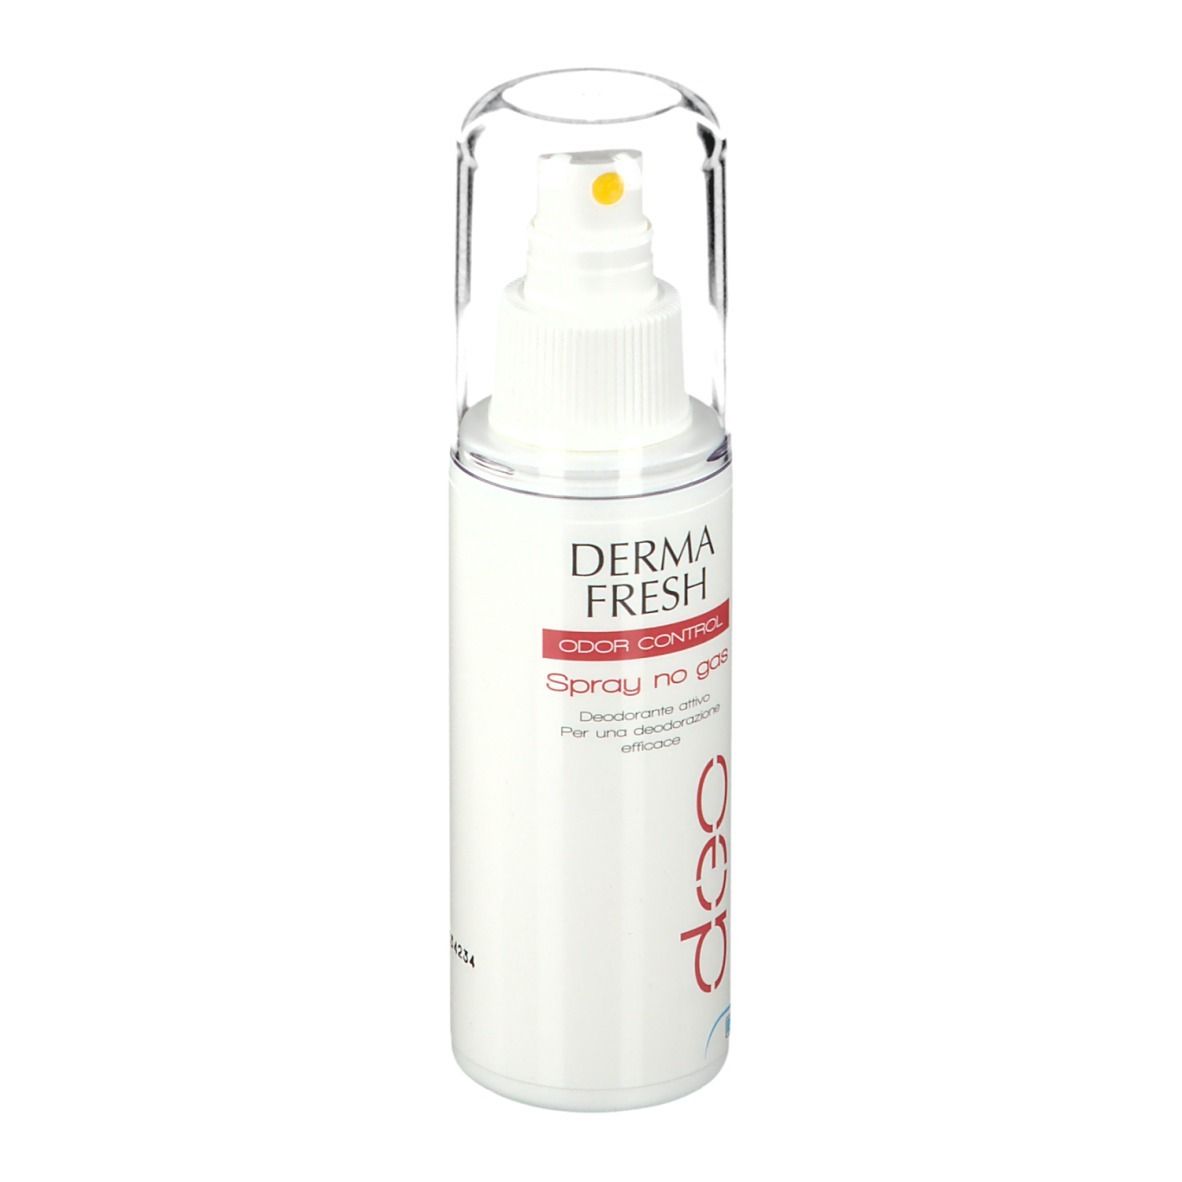 Dermafresh Odor Control Spray No Gas